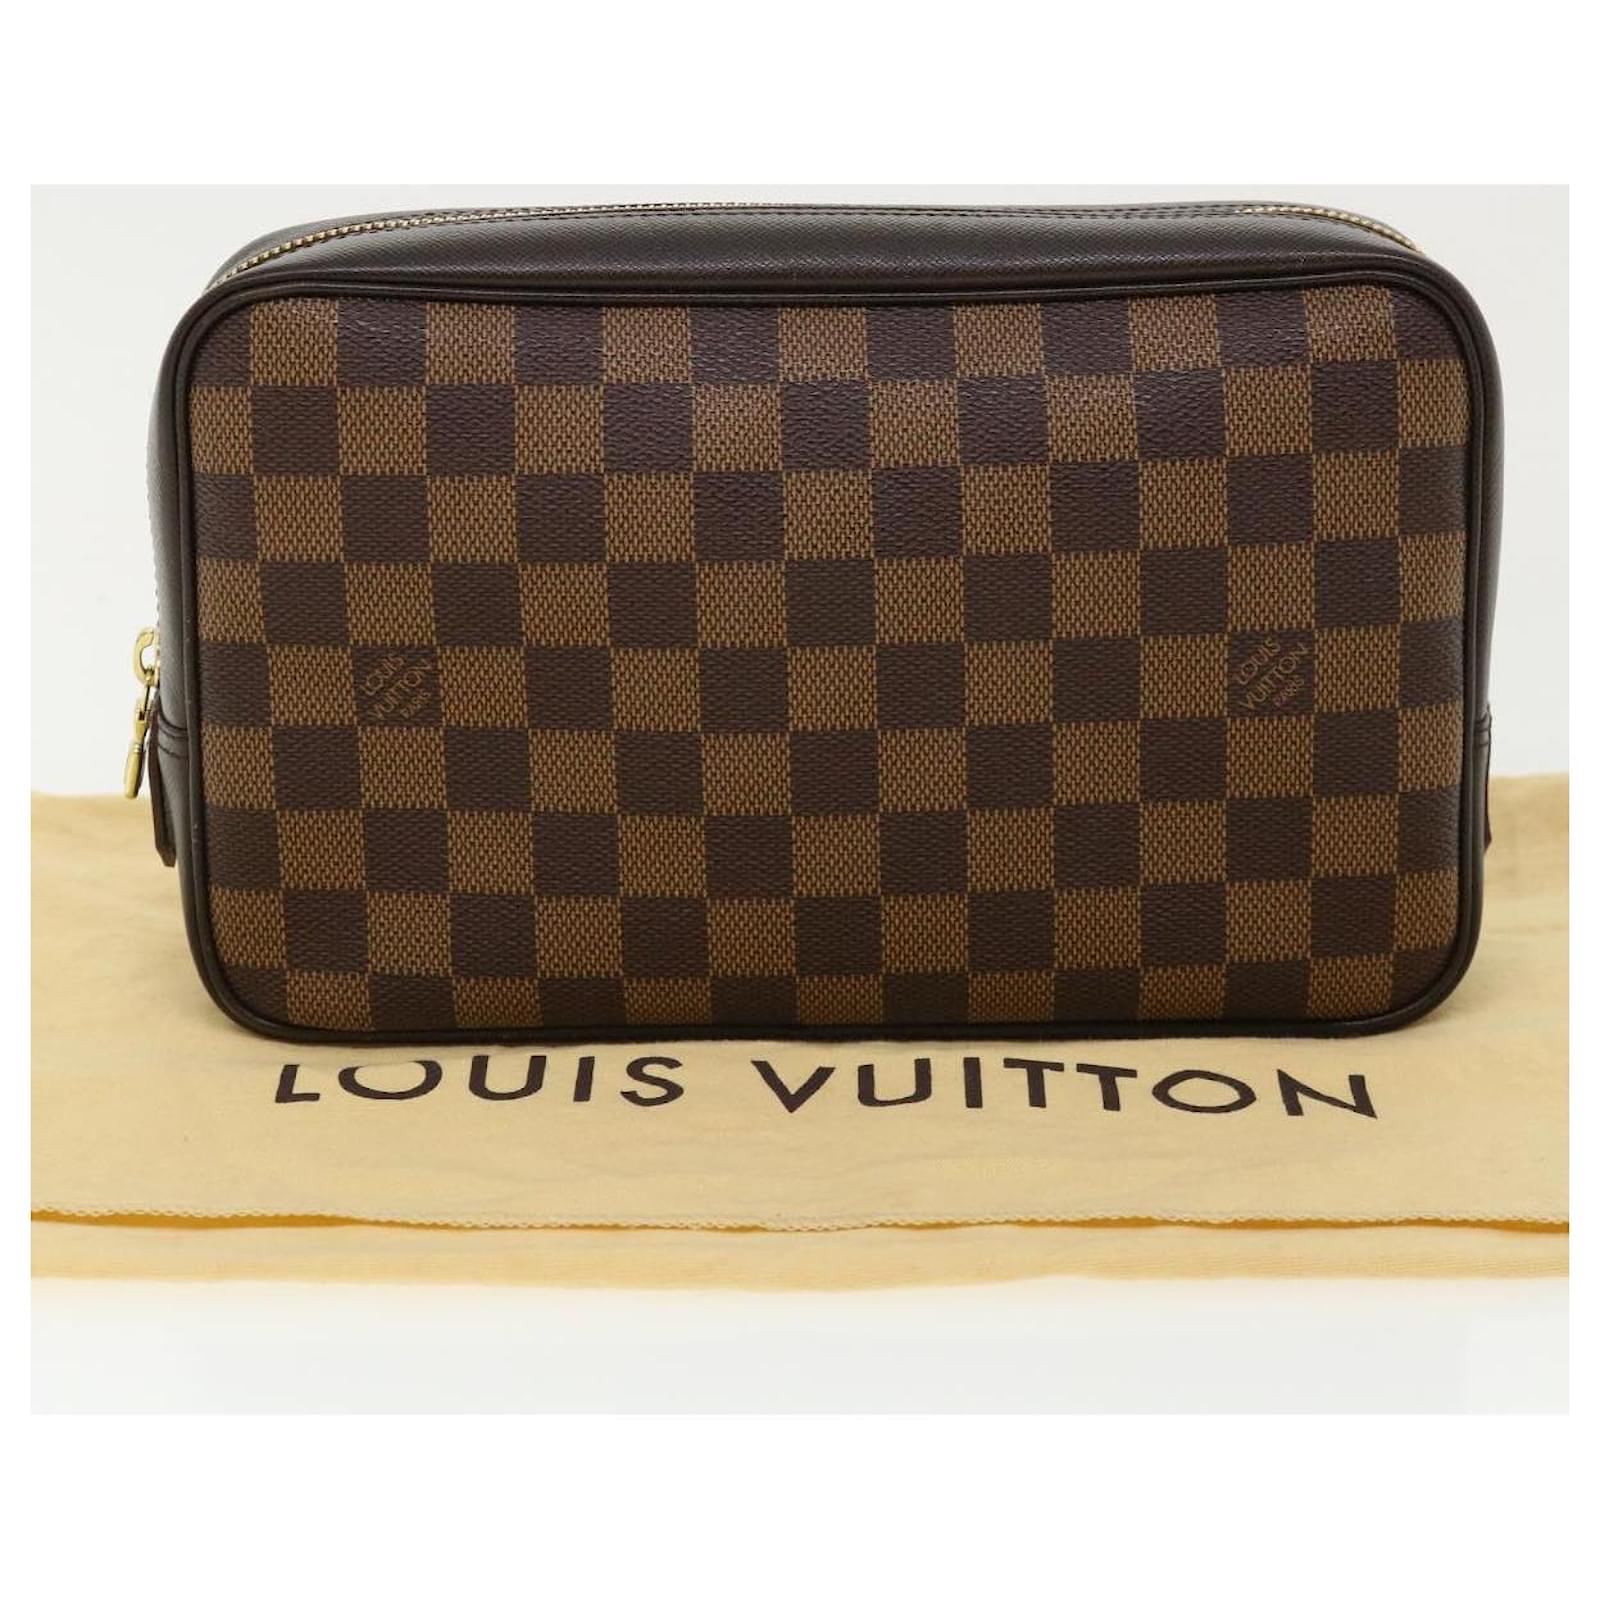 Louis-Vuitton-Damier-Trousse-Toilette-Pouch-Clutch-Bag-N47623